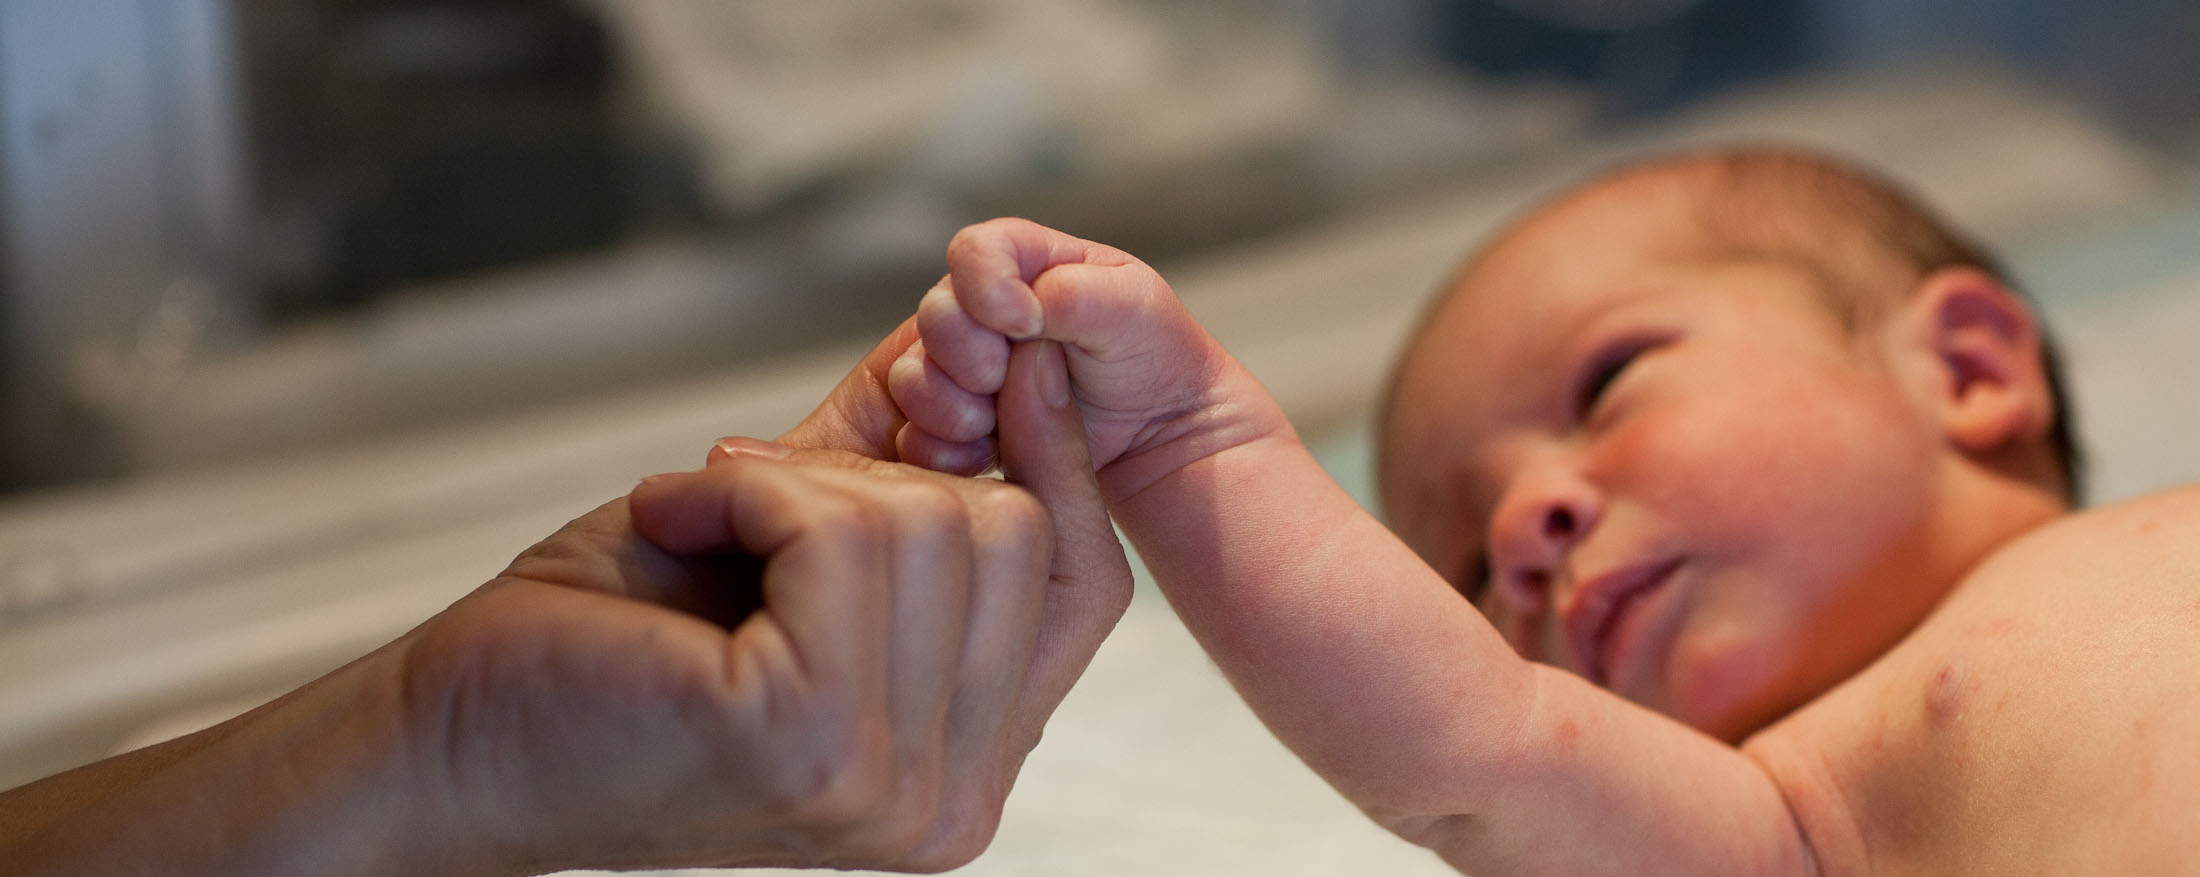 Взрослый нежно держит новорожденного за руку